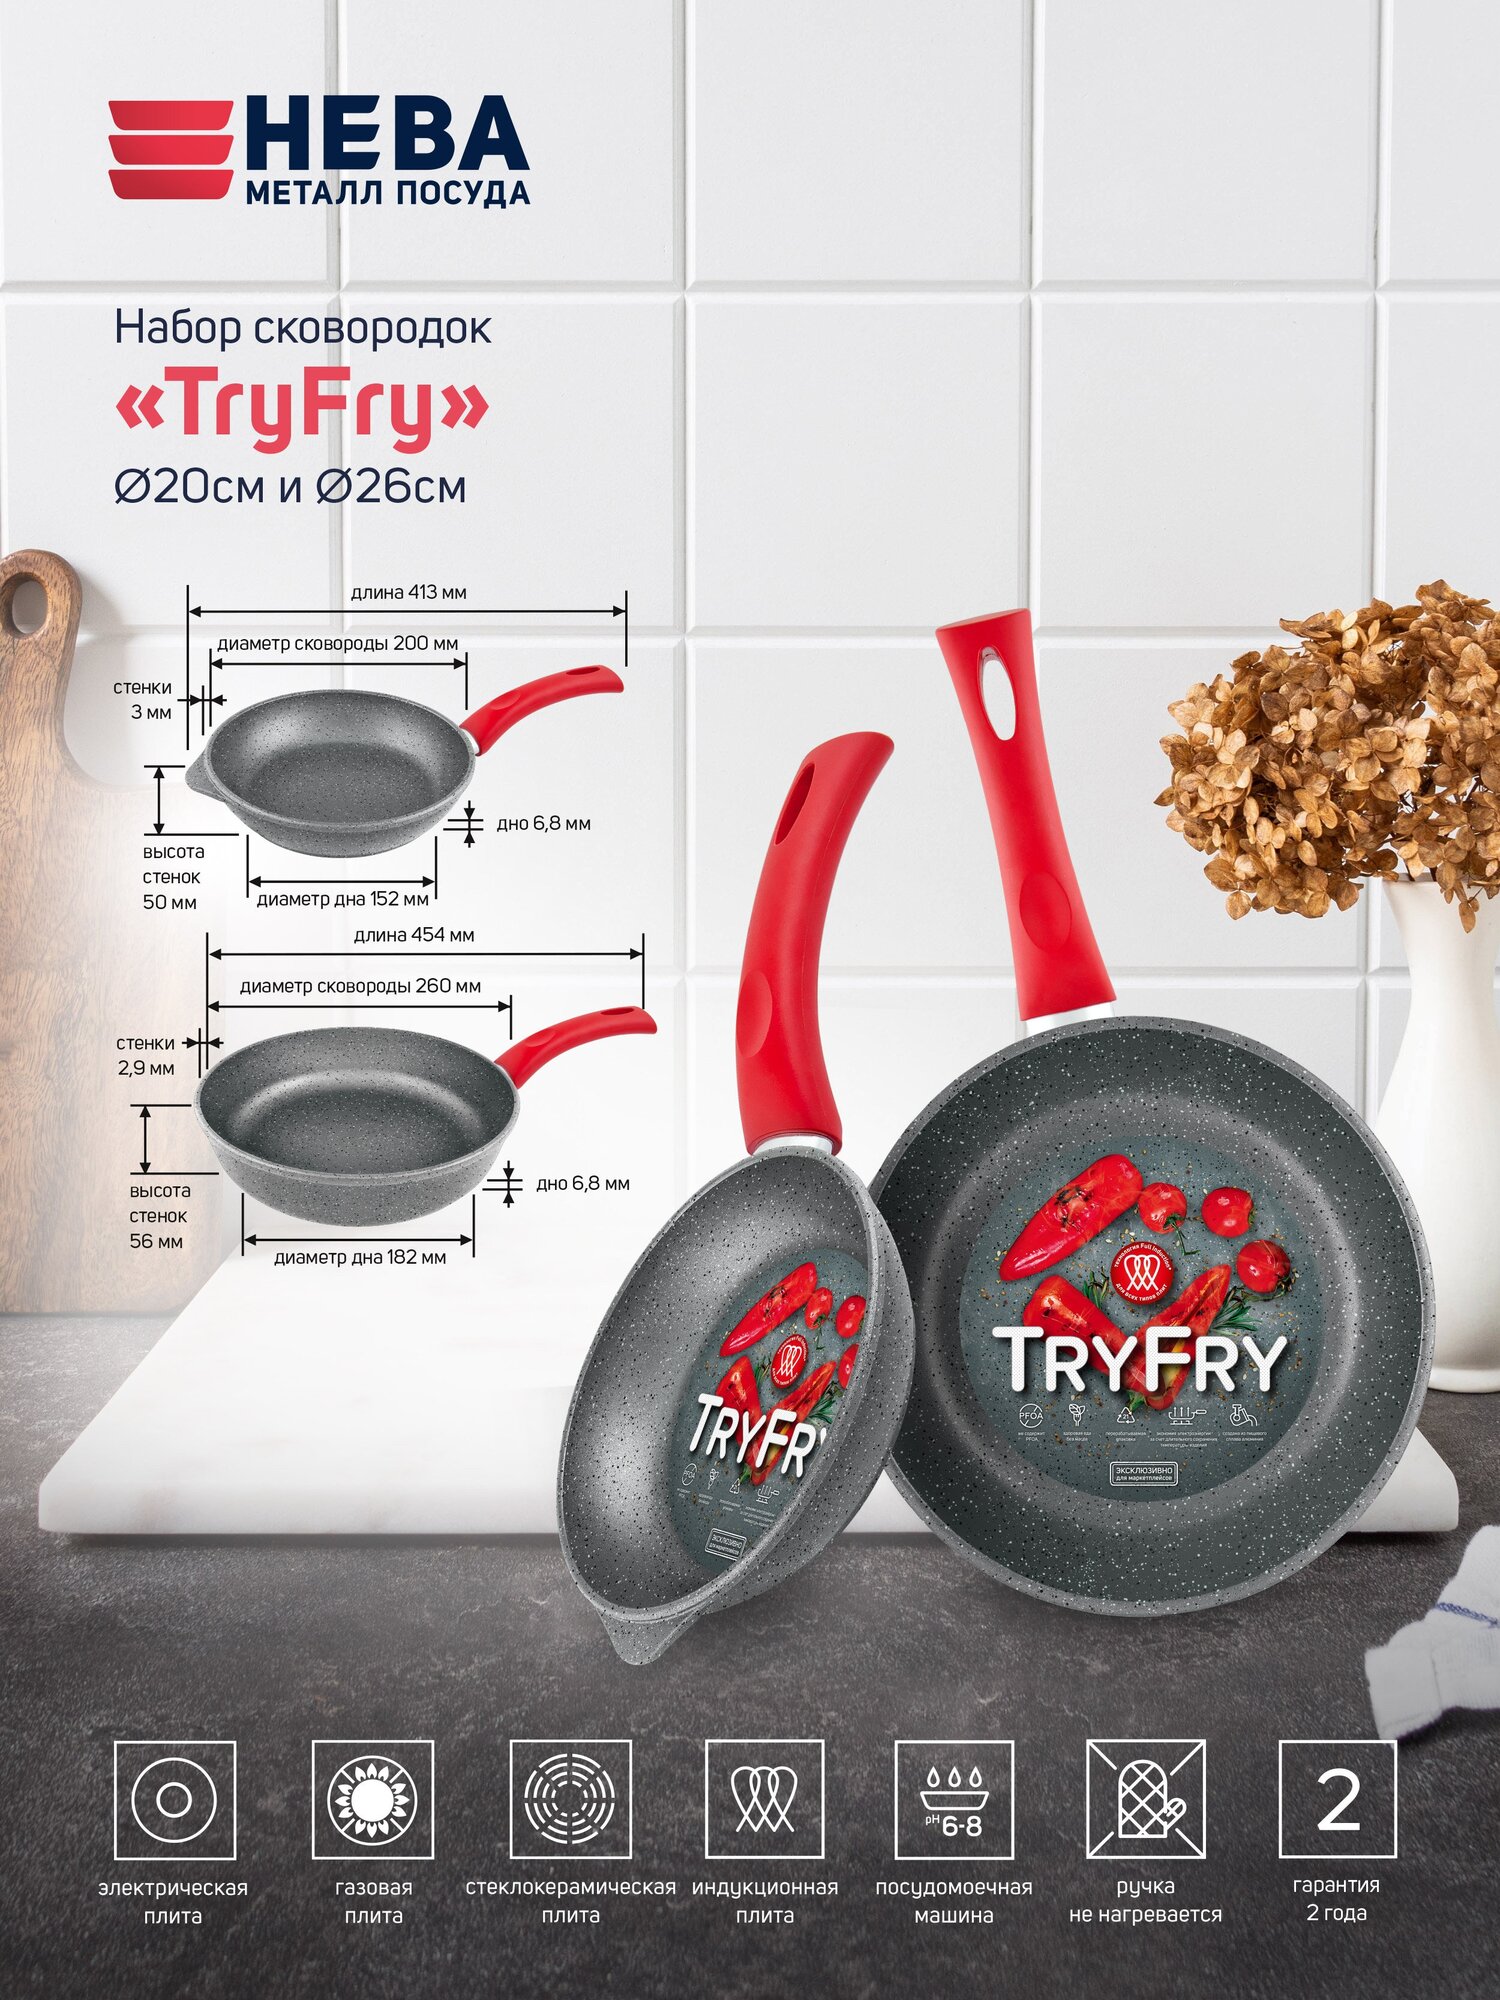 Набор сковородок с антипригарным покрытием для Индукционной плиты "TryFry" Нева Металл Посуда, 2 шт